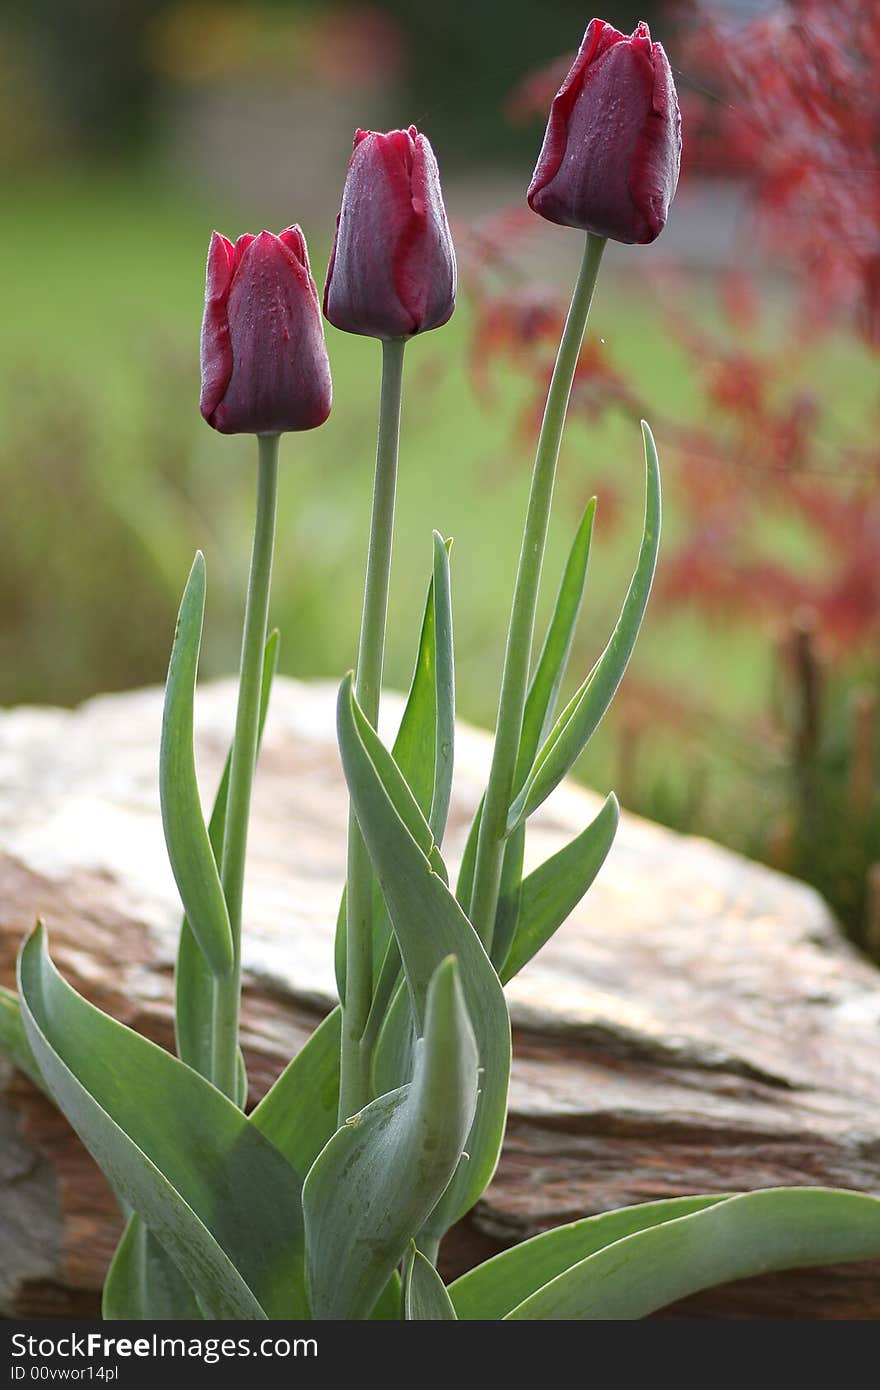 Three dark red tulips in the garden